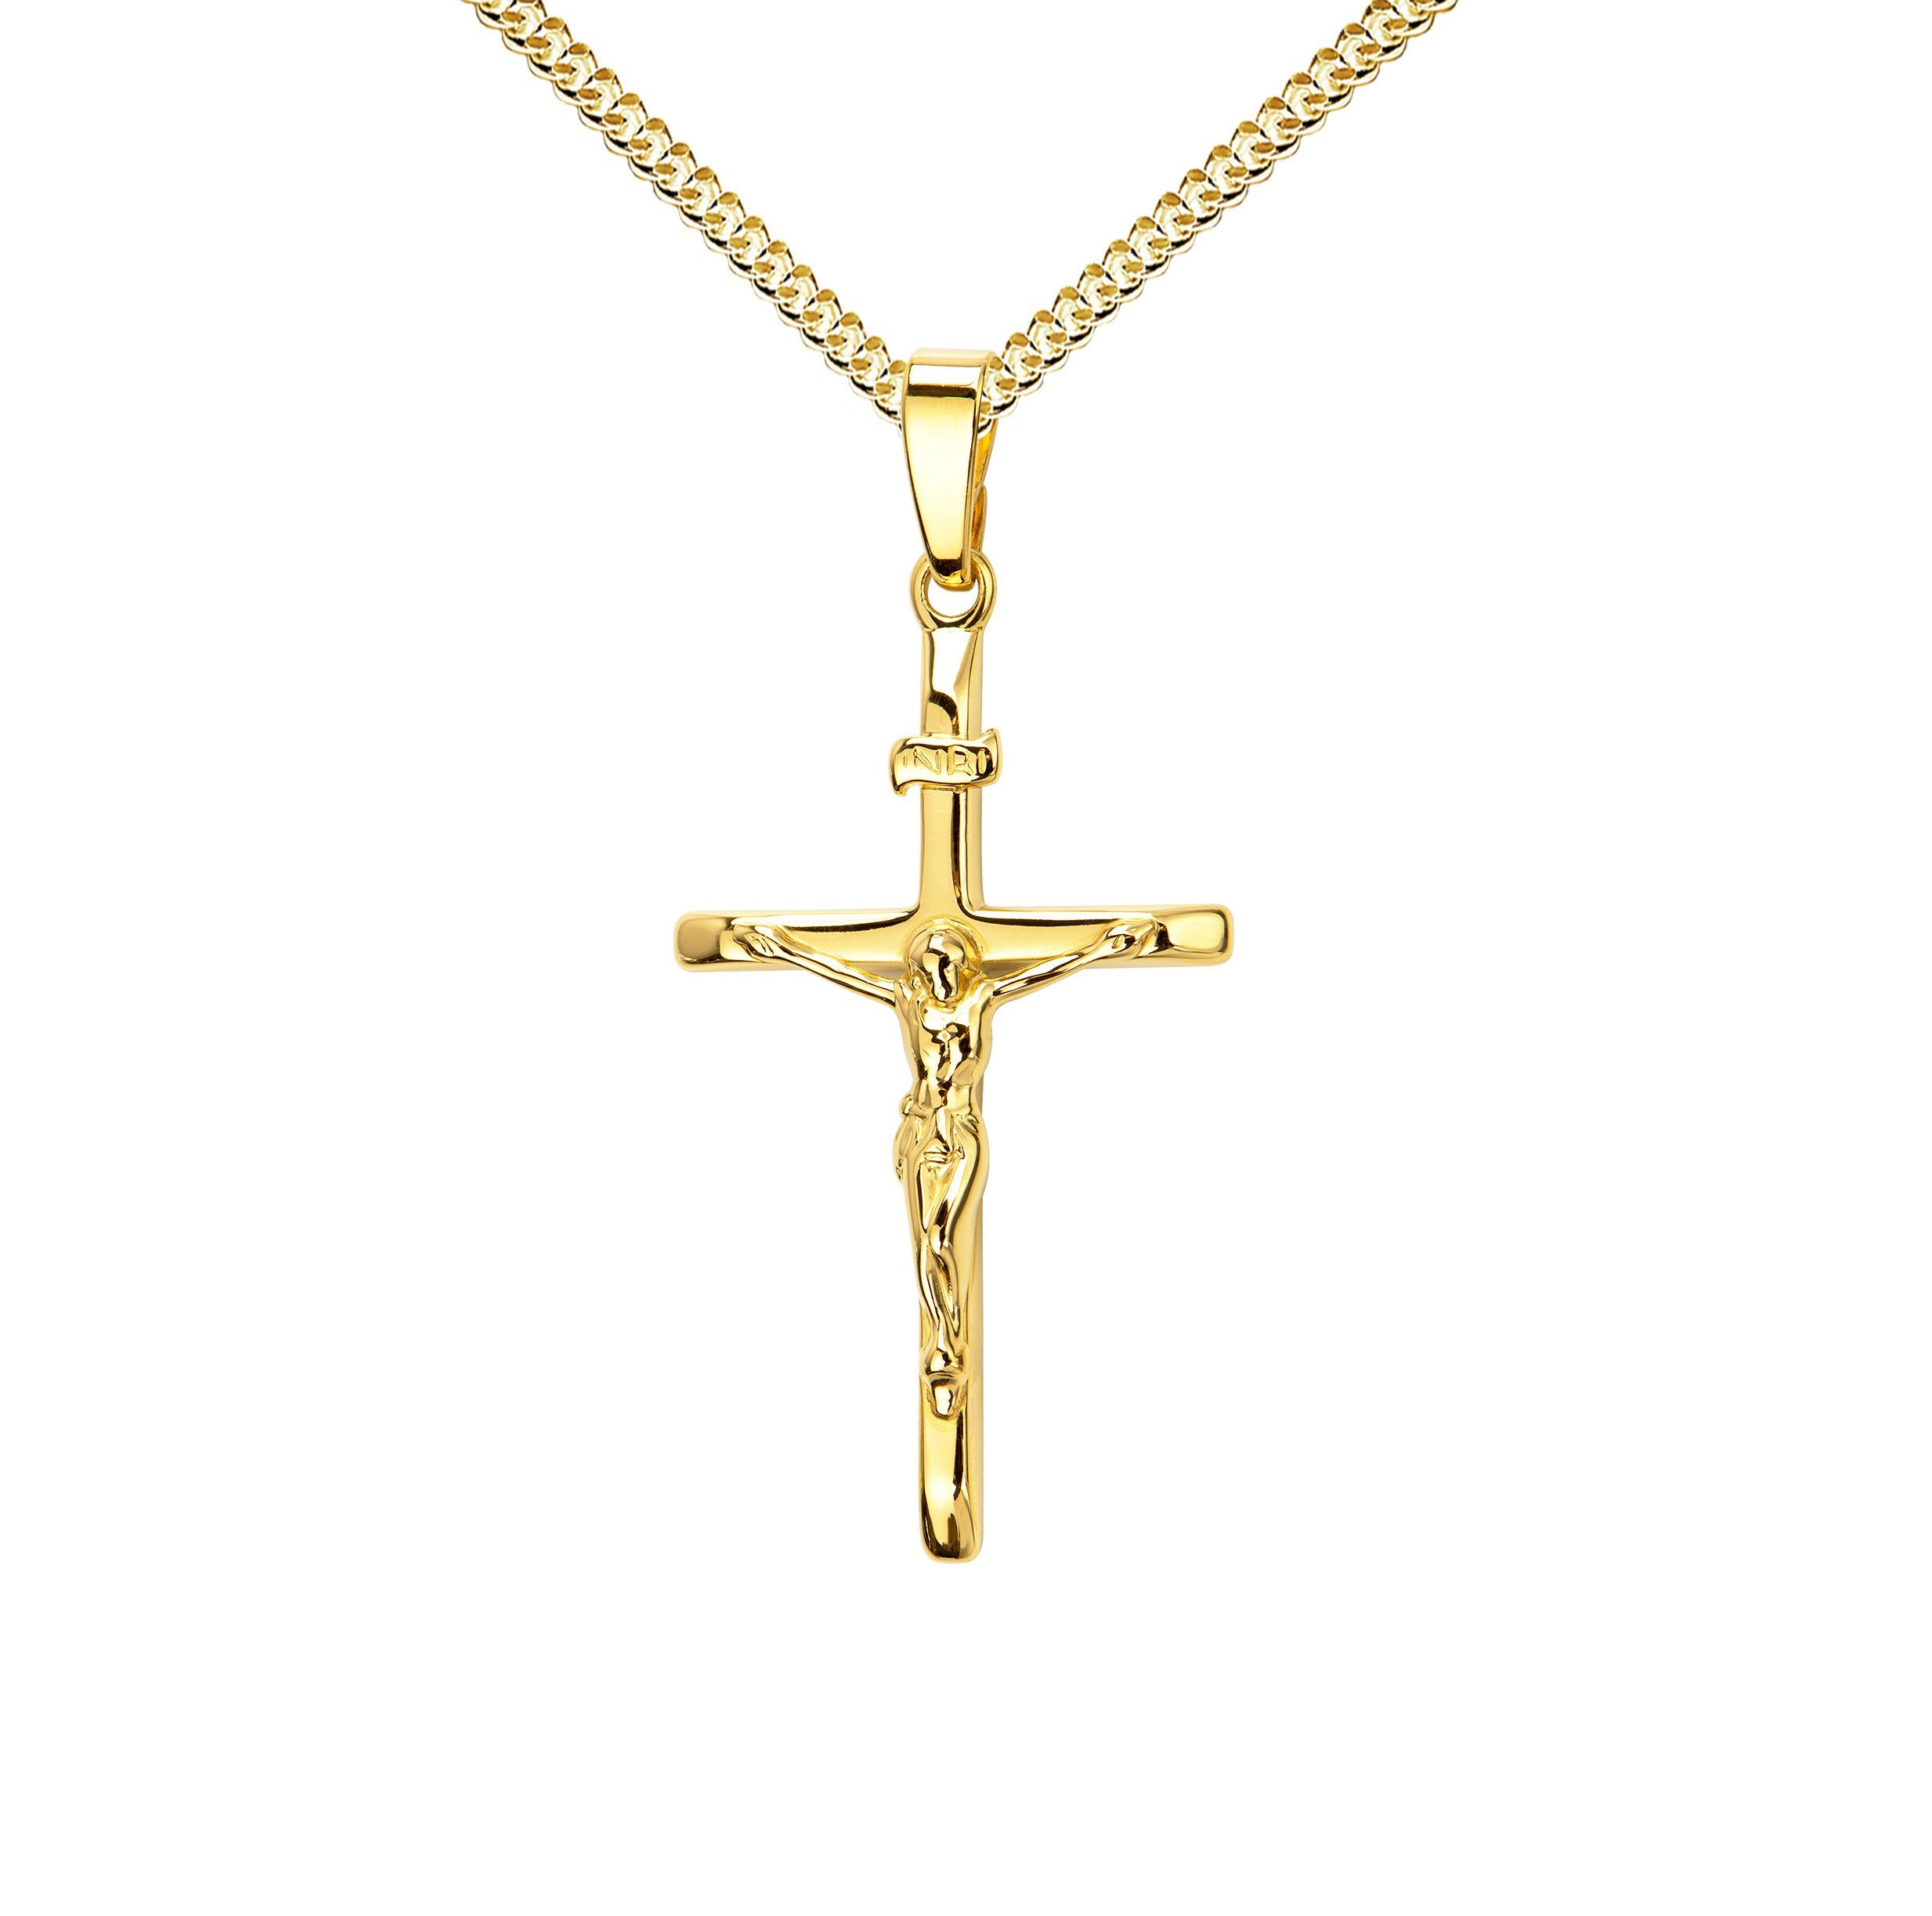 JEVELION Kreuzkette Kruzifix Kreuzanhänger 333 Gold - Made in Germany (Goldkreuz, für Damen und Herren), Mit Kette vergoldet- Länge wählbar 36 - 70 cm oder ohne Kette.